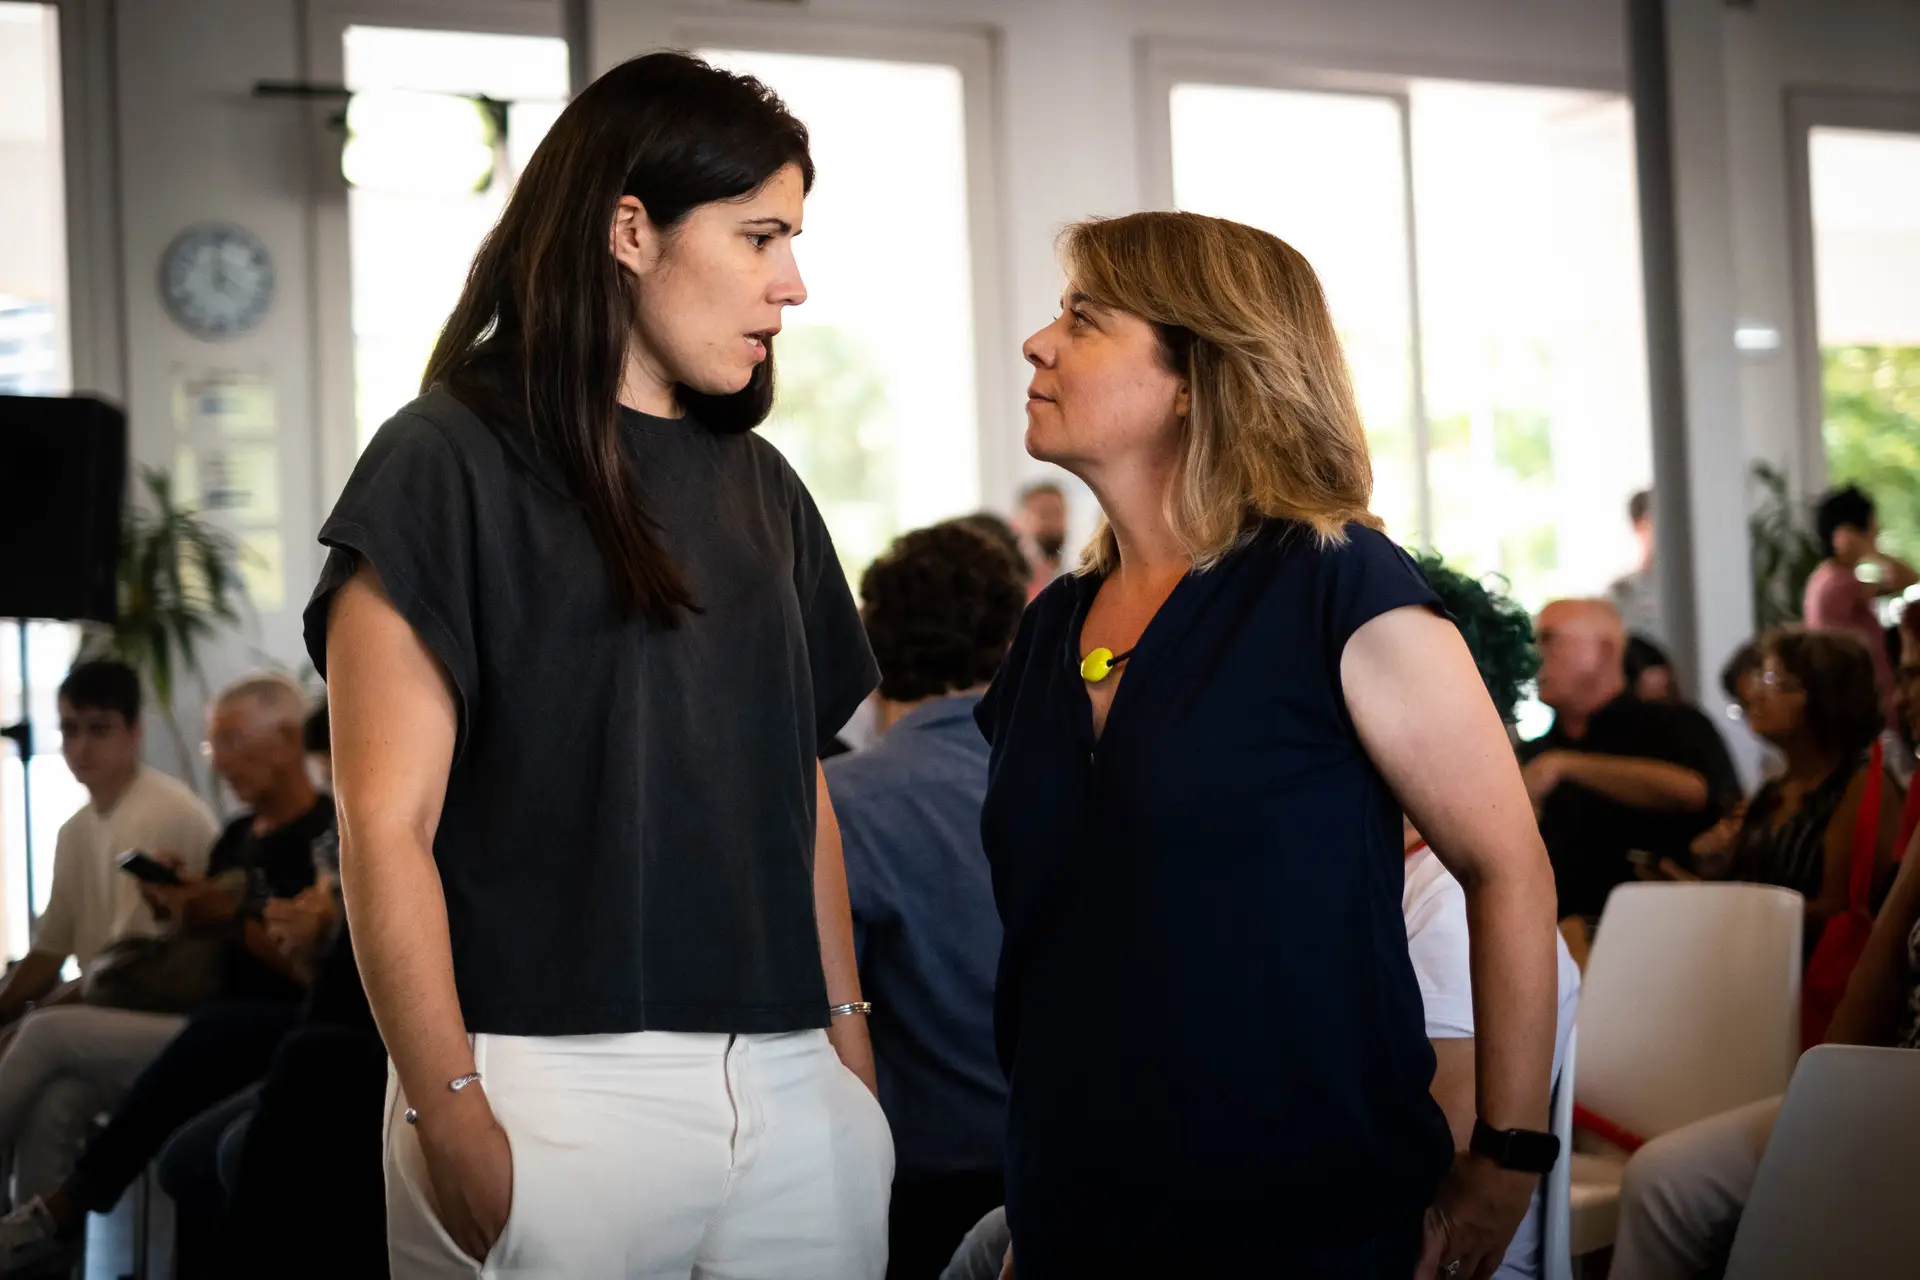 Mariana Mortágua e Catarina Martins, duas das figuras centrais do partido, conversam antes do encerramento da última rentrée do Bloco, em agosto de 2021